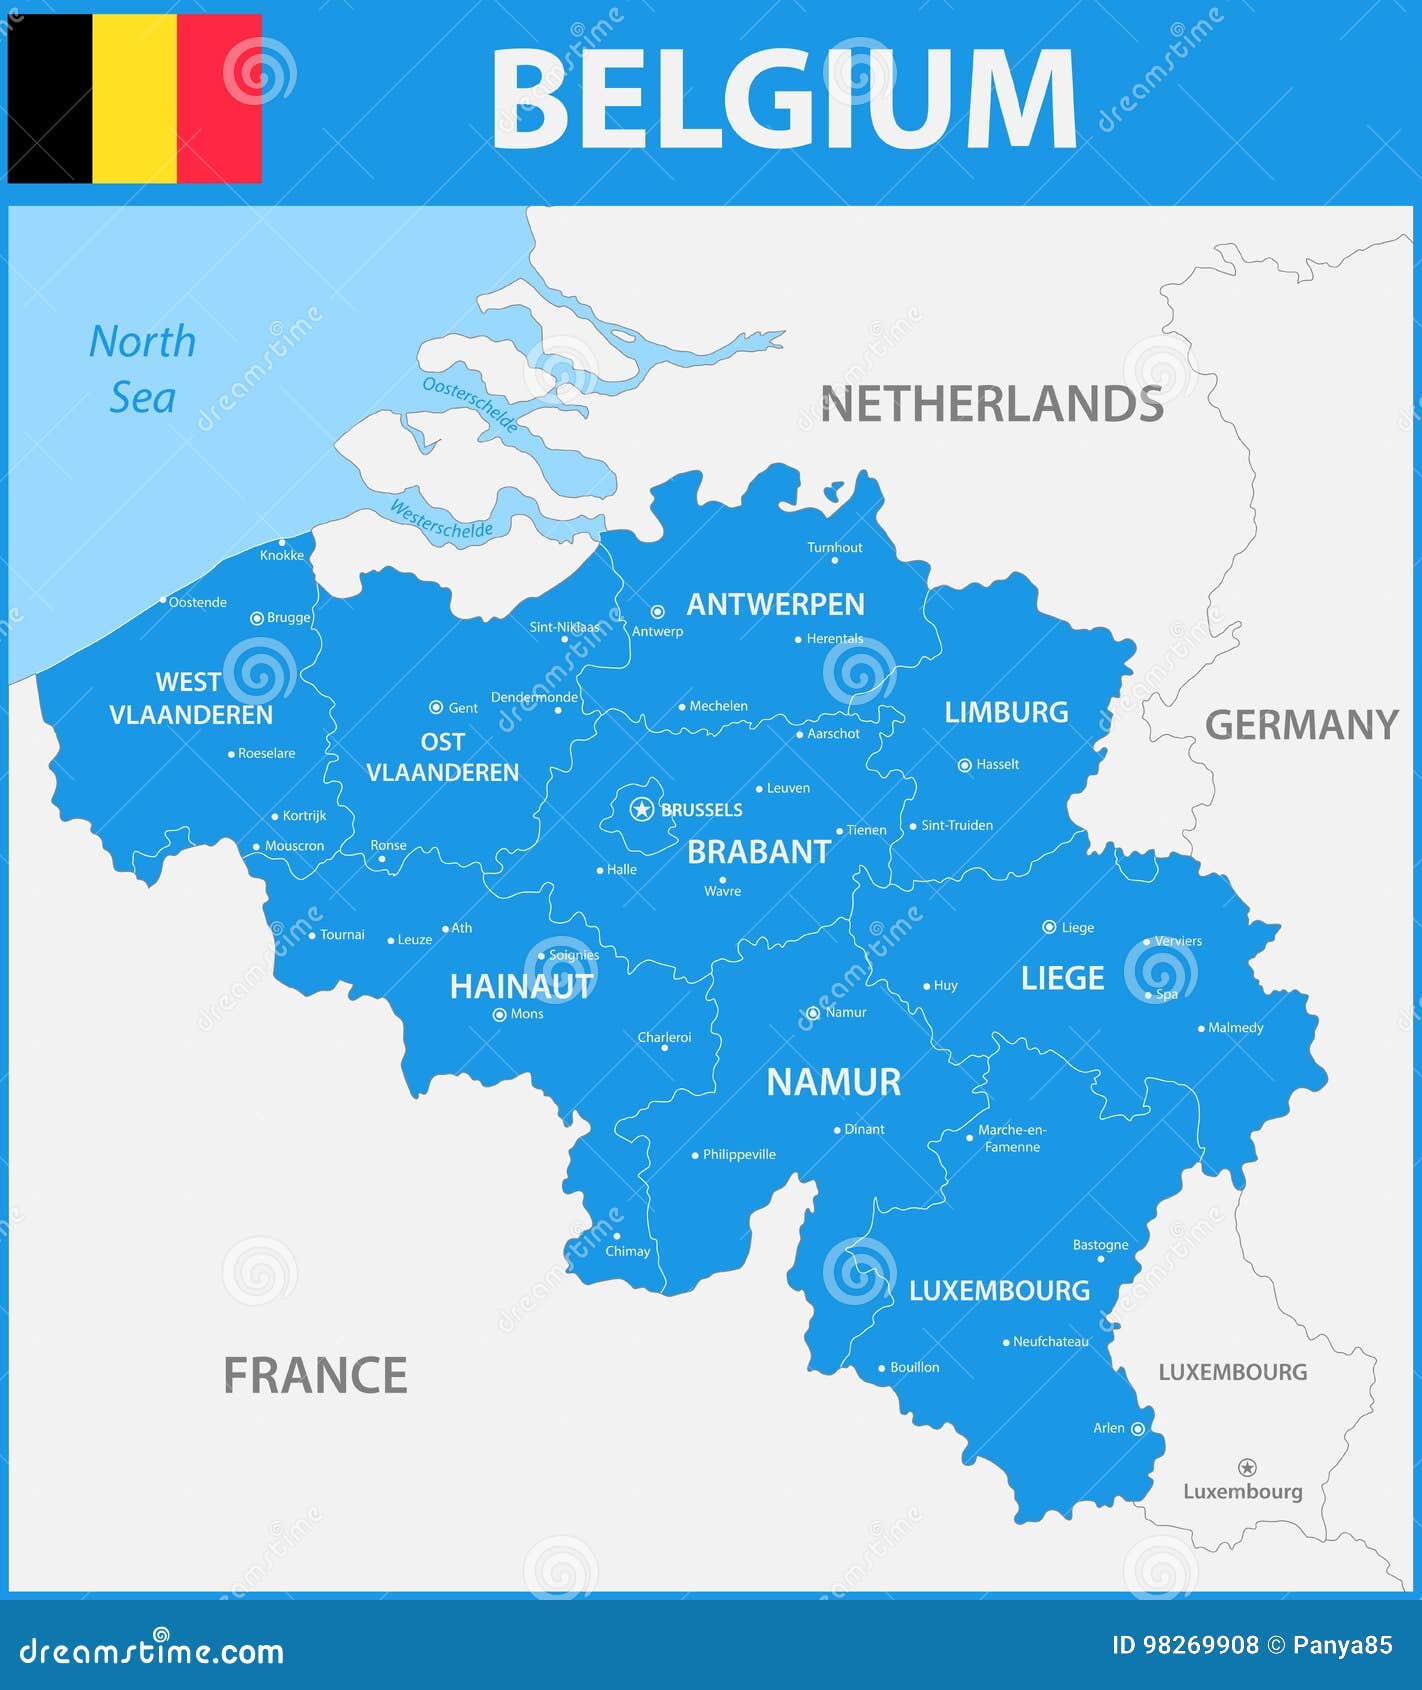 La Carte Detaillee De La Belgique Avec Des Regions Ou Des Etats Et Des Villes Capitaux Illustration De Vecteur Illustration Du Belgique Etats